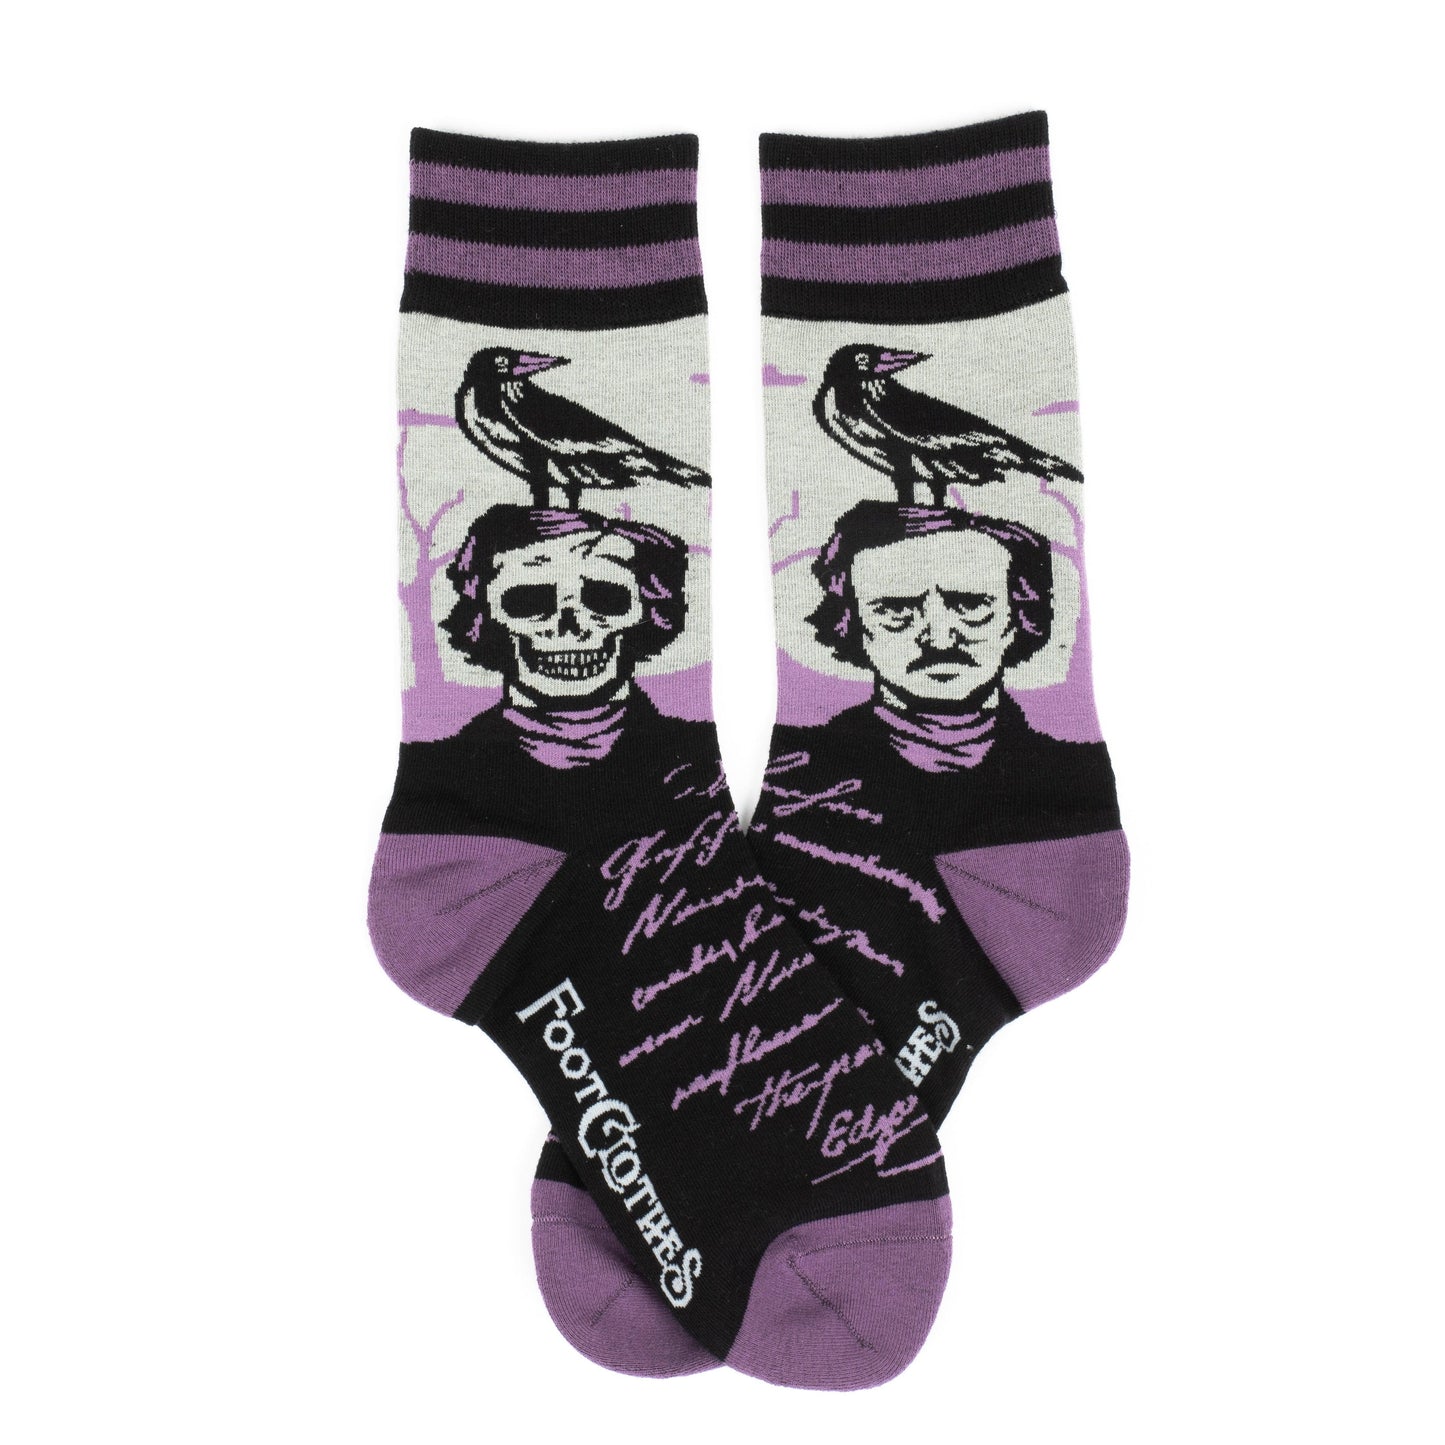 The Raven Poe Crew Socks